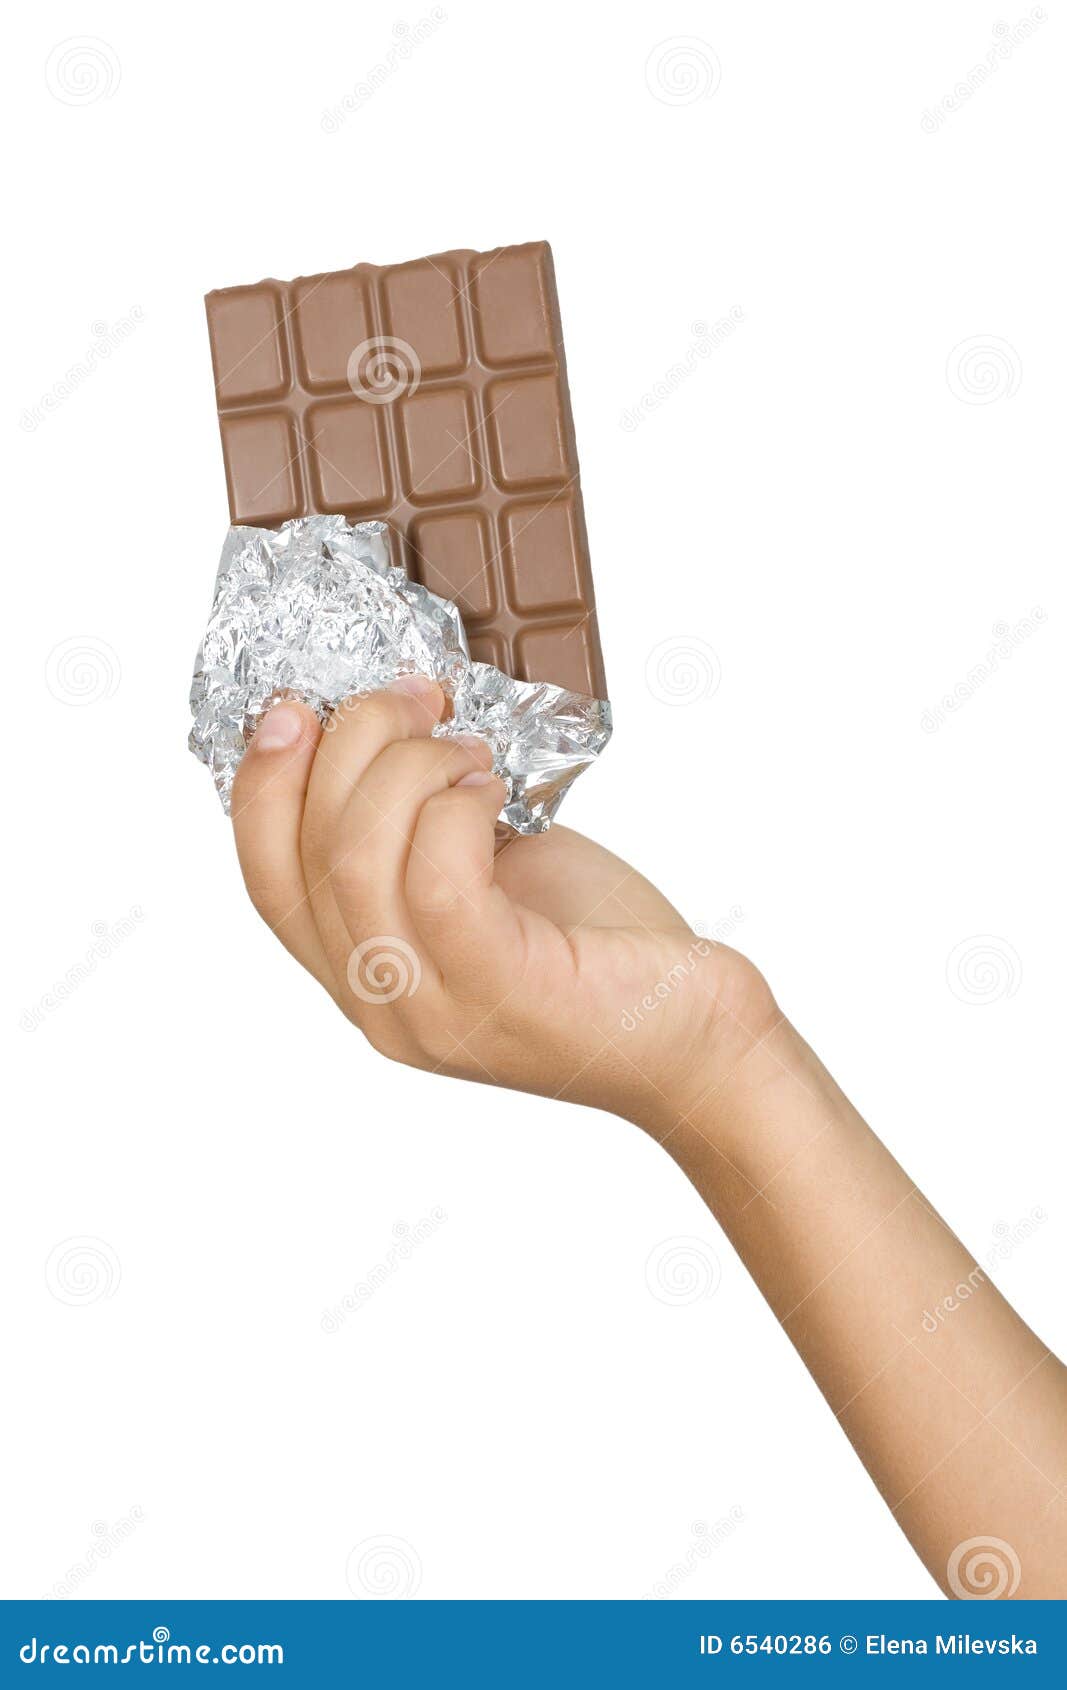 Дядя тянет руку в руке шоколадка. Шоколадка в руке. Кусок шоколадки в руке. Батончик в руке. Шоколадка в ладонях.